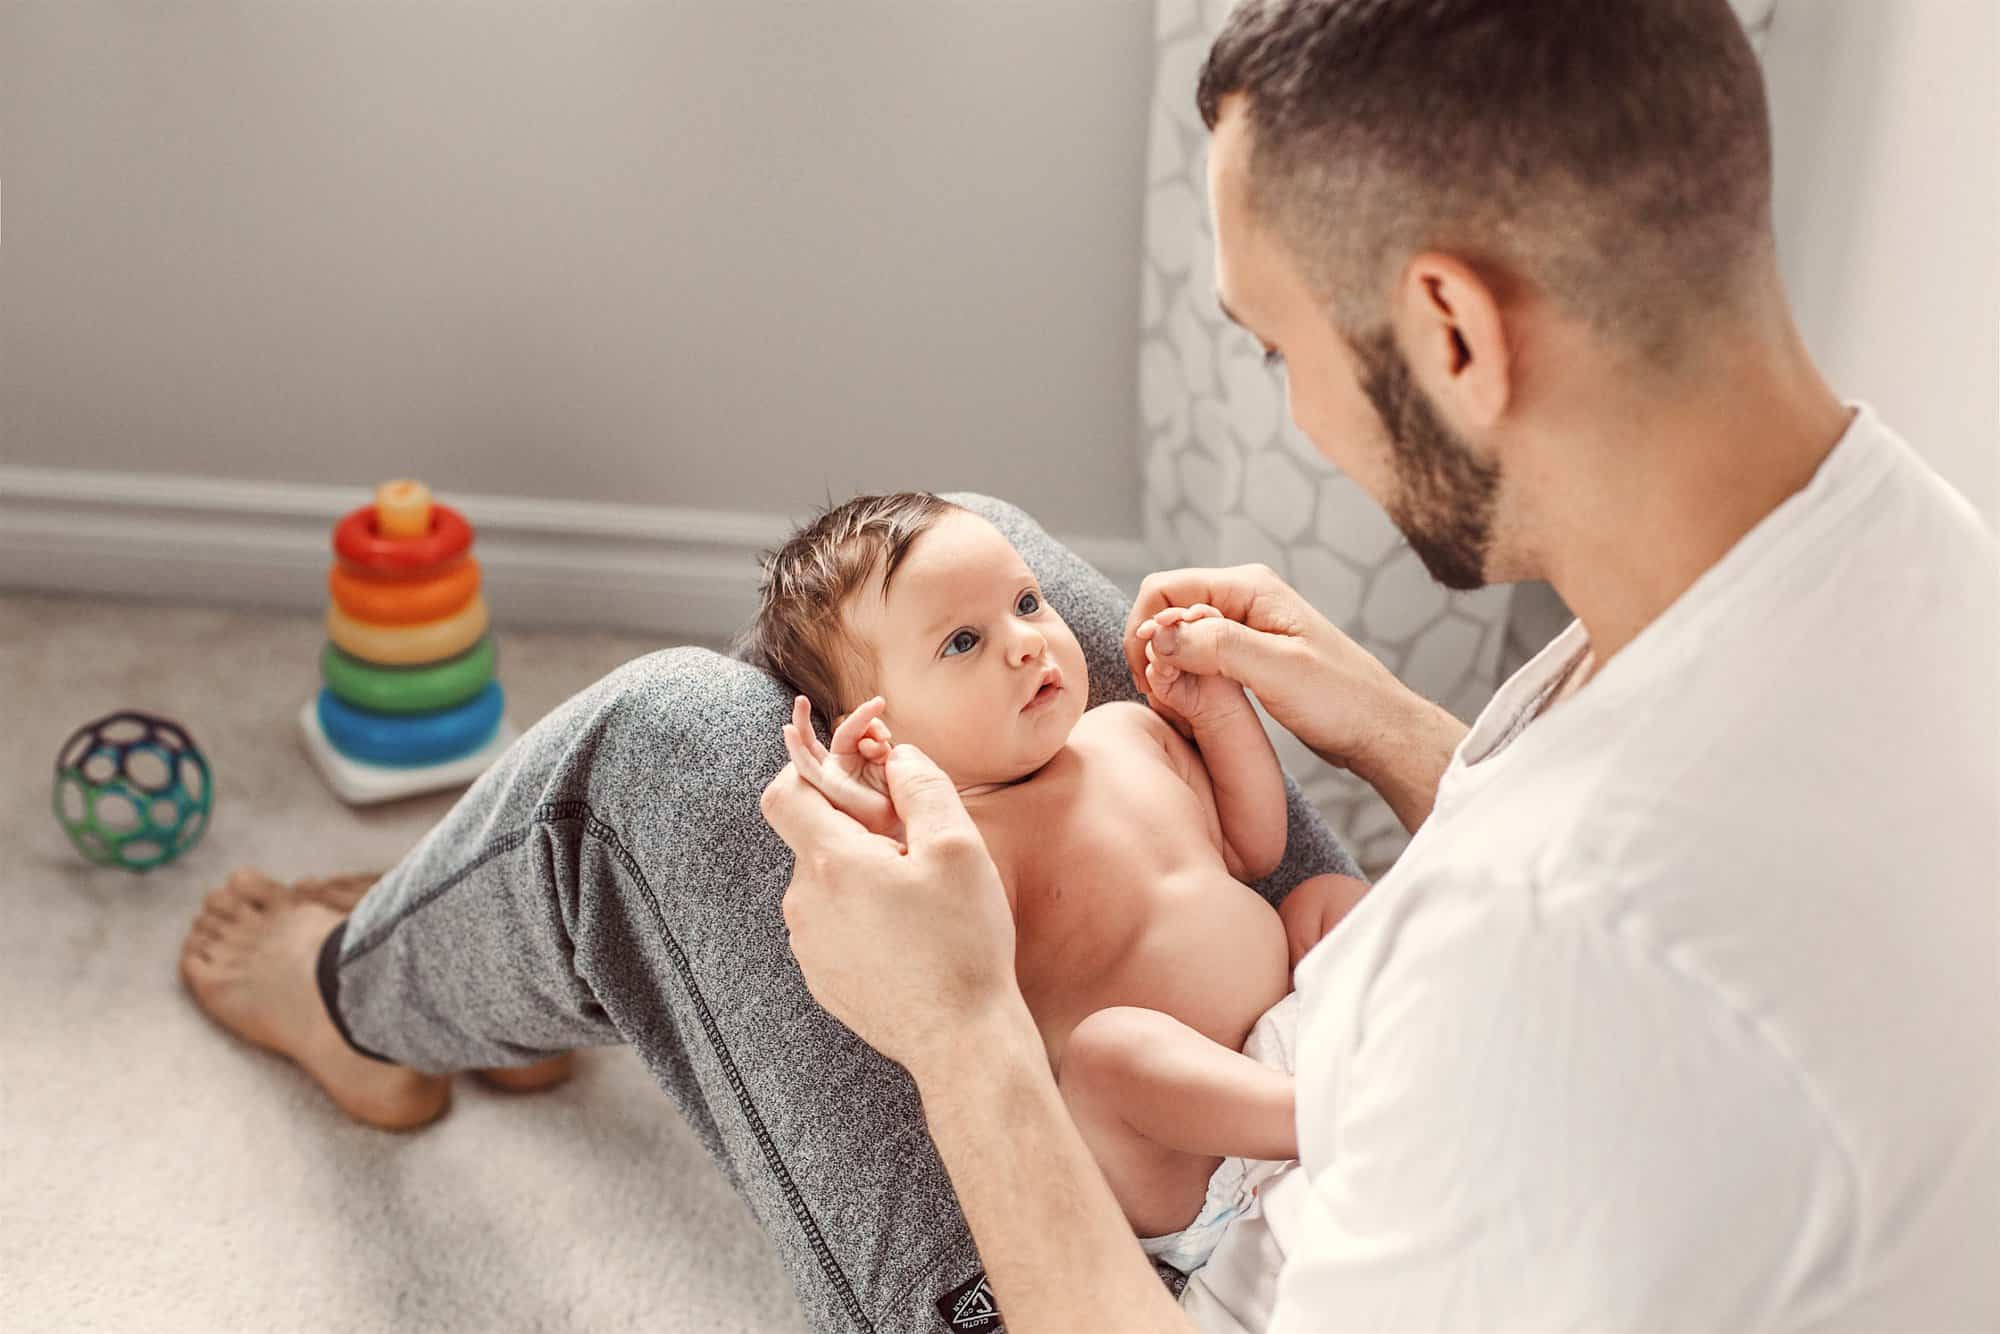 Ejercicios de estimulación temprana para bebés de 0 a 6 meses